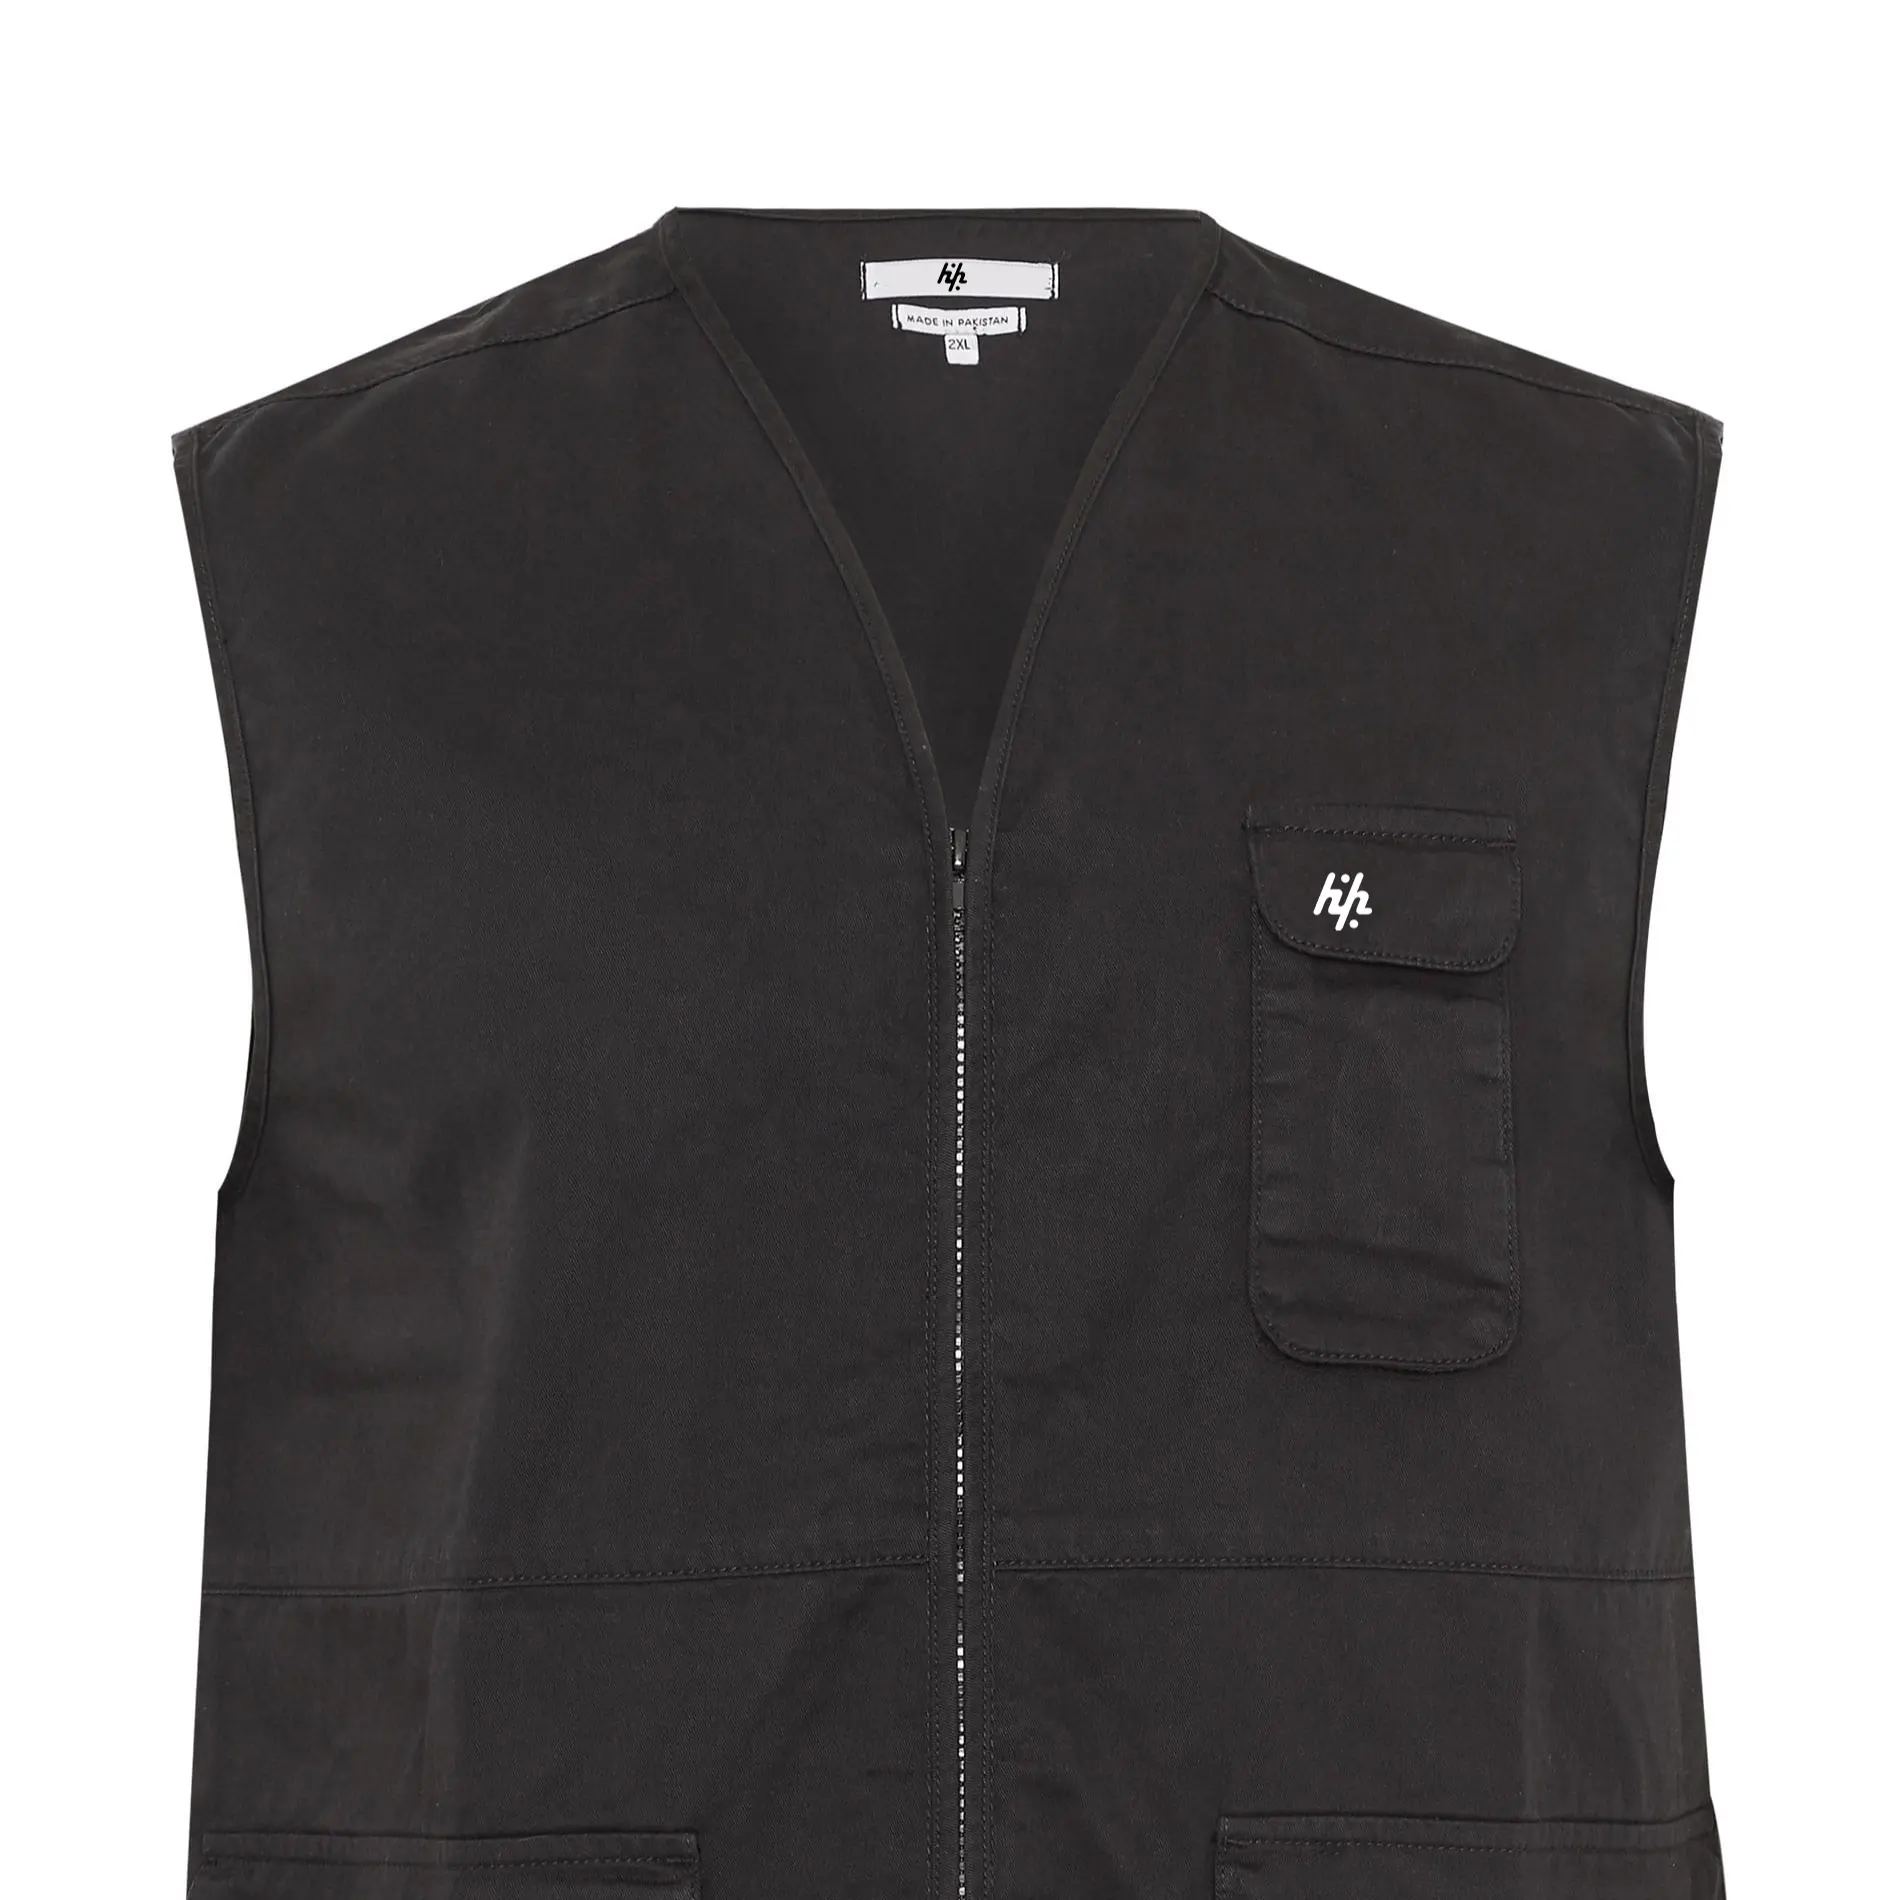 Özel ceketler OEM erkek siyah yardımcı yelek kollu daha az sıcak erkek balon ceket (üretim tarafından Huzaifa ürünler)